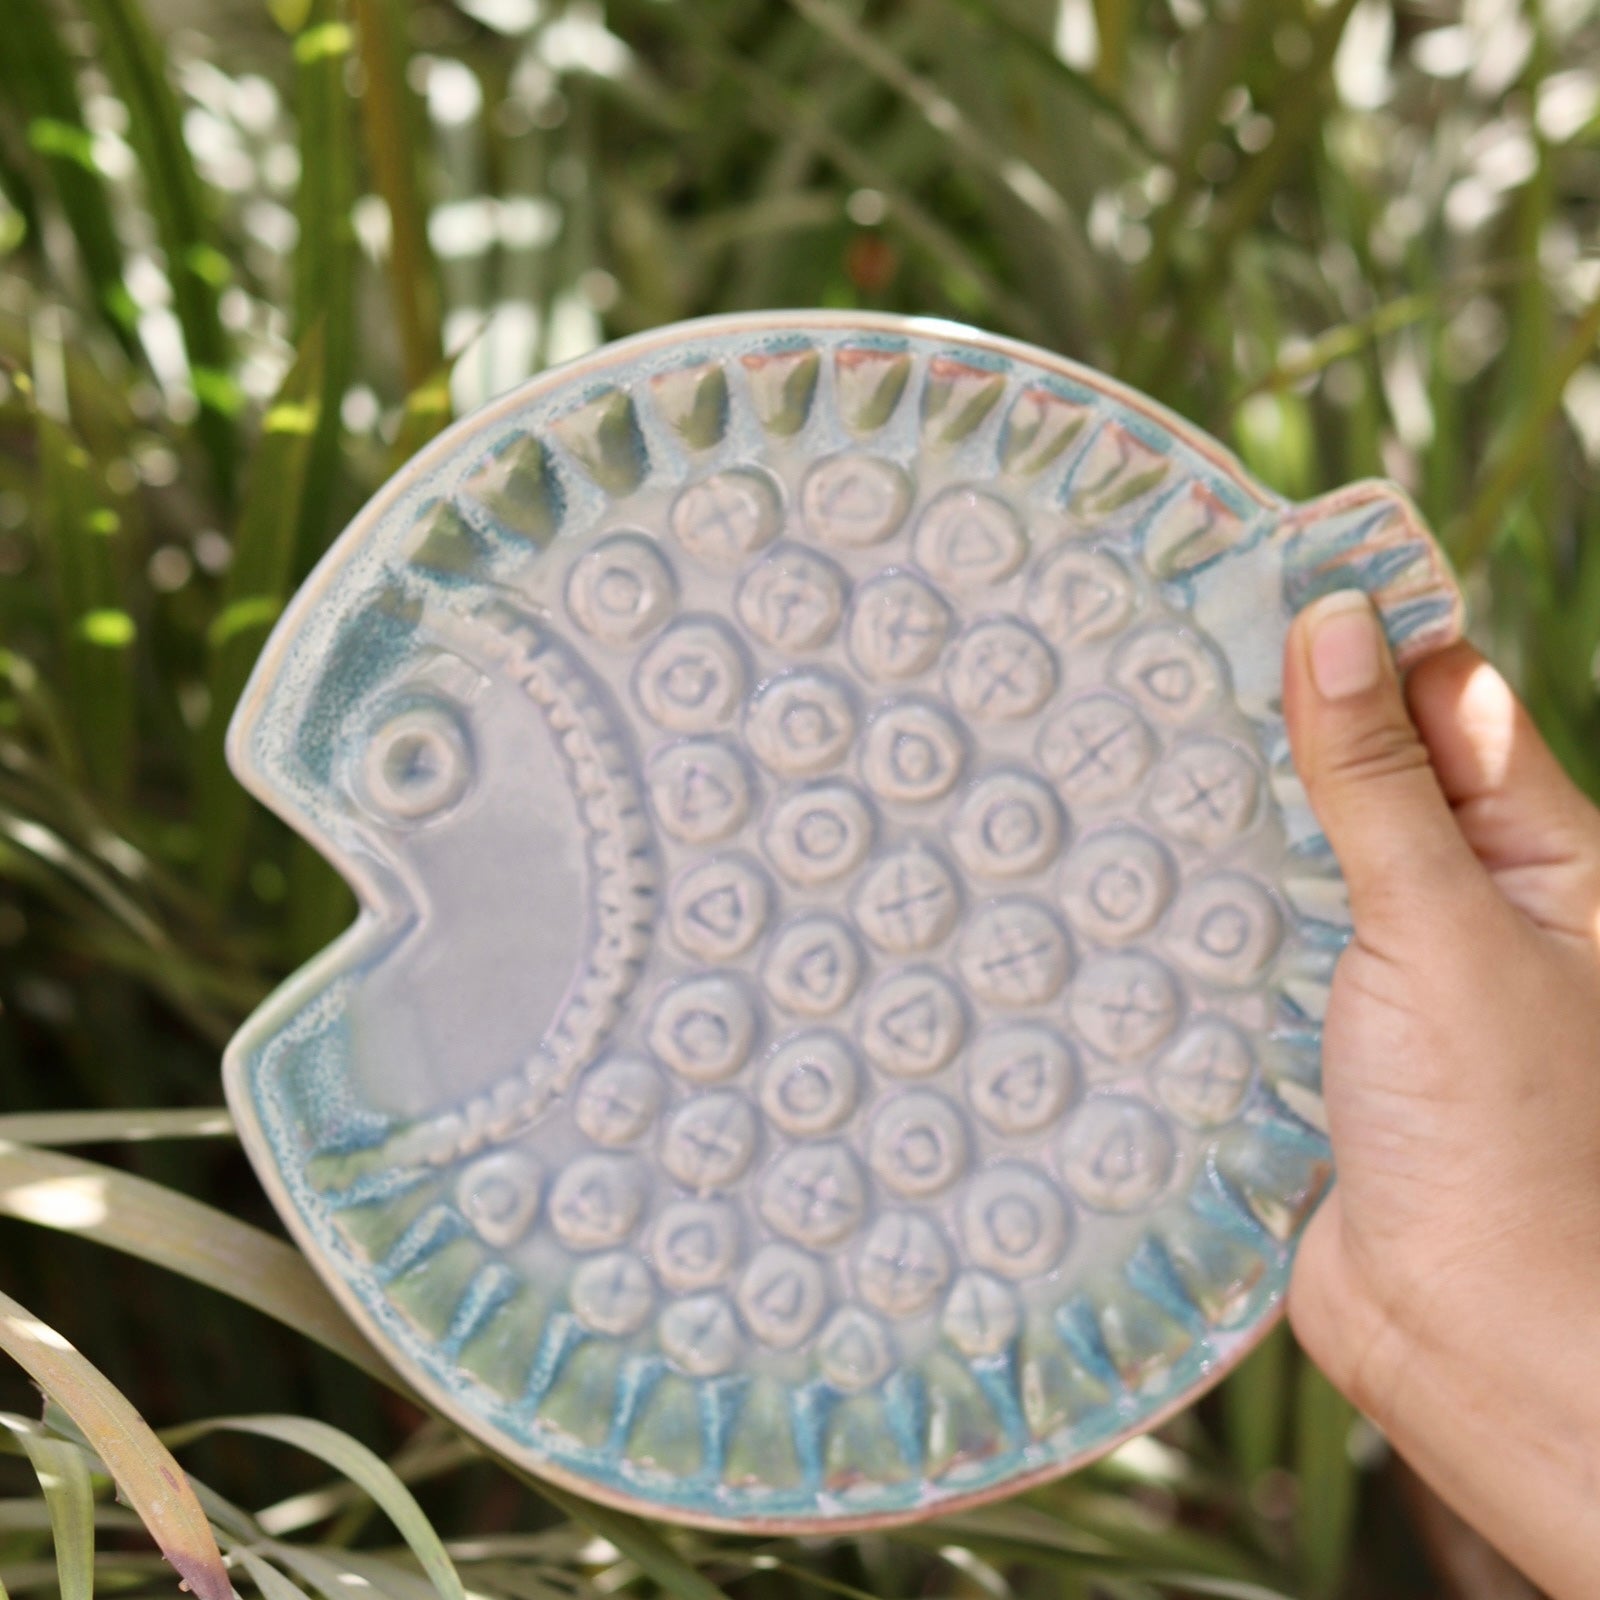 Ceramic fish platter in hand